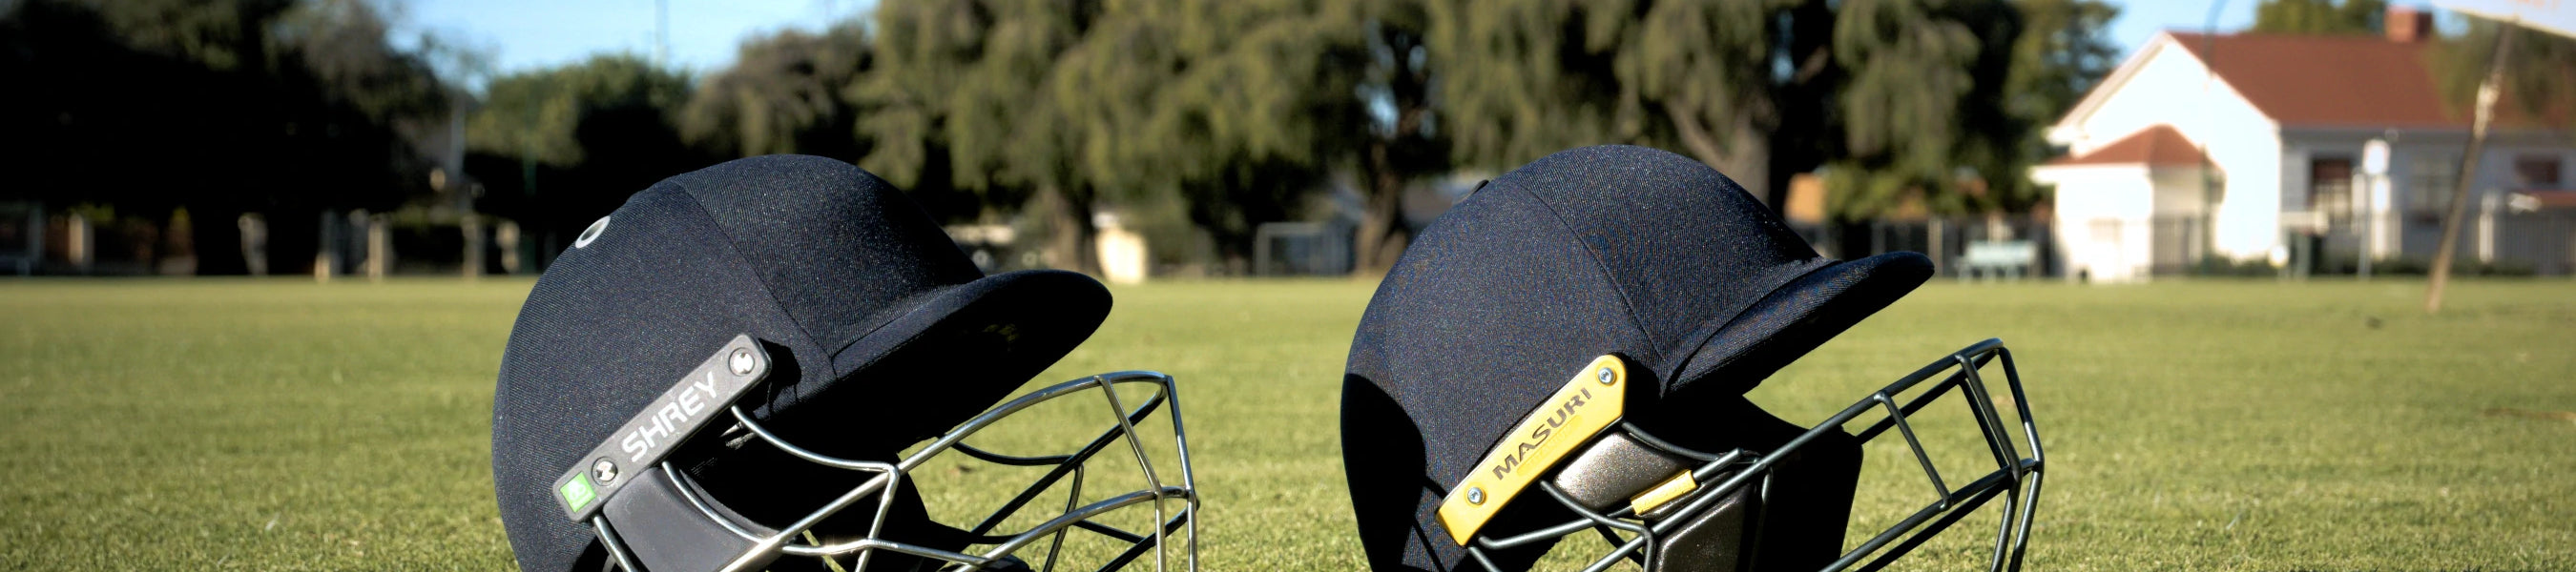 Cricket Helmet Accessories